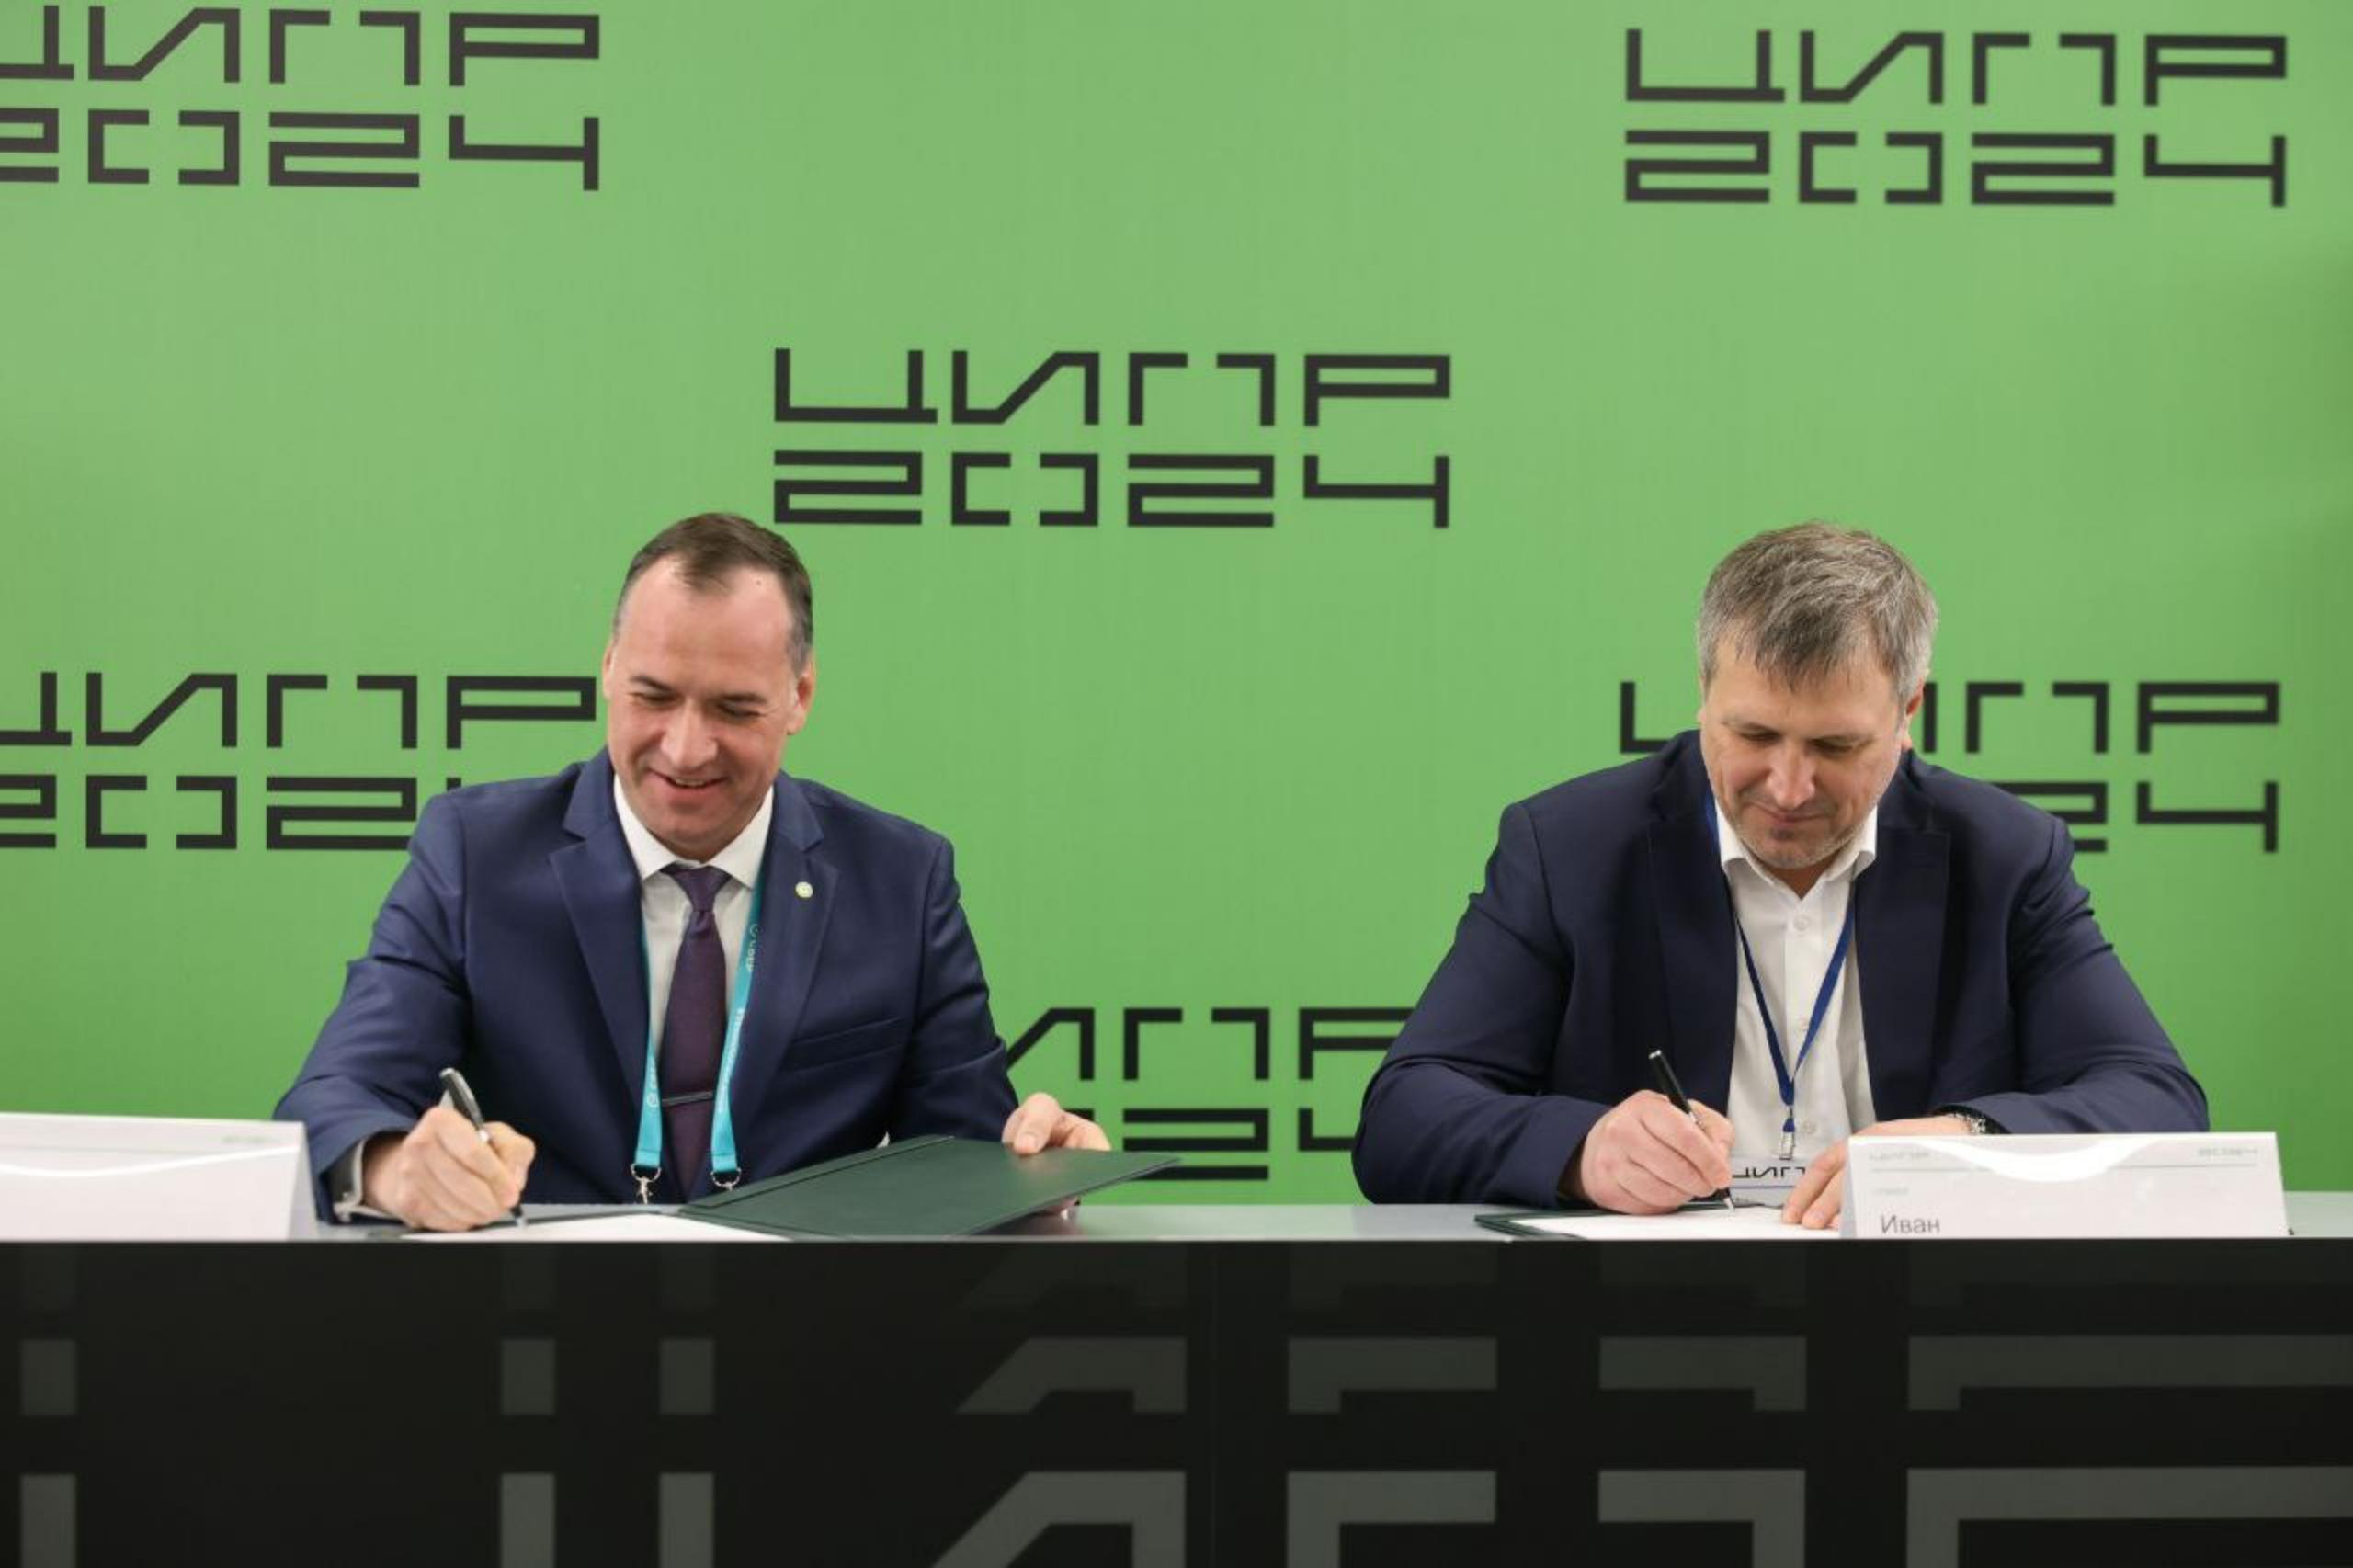 Сбер и Администрация города Дзержинска Нижегородской области подписали меморандум о сотрудничестве в сфере искусственного интеллекта и цифровизации